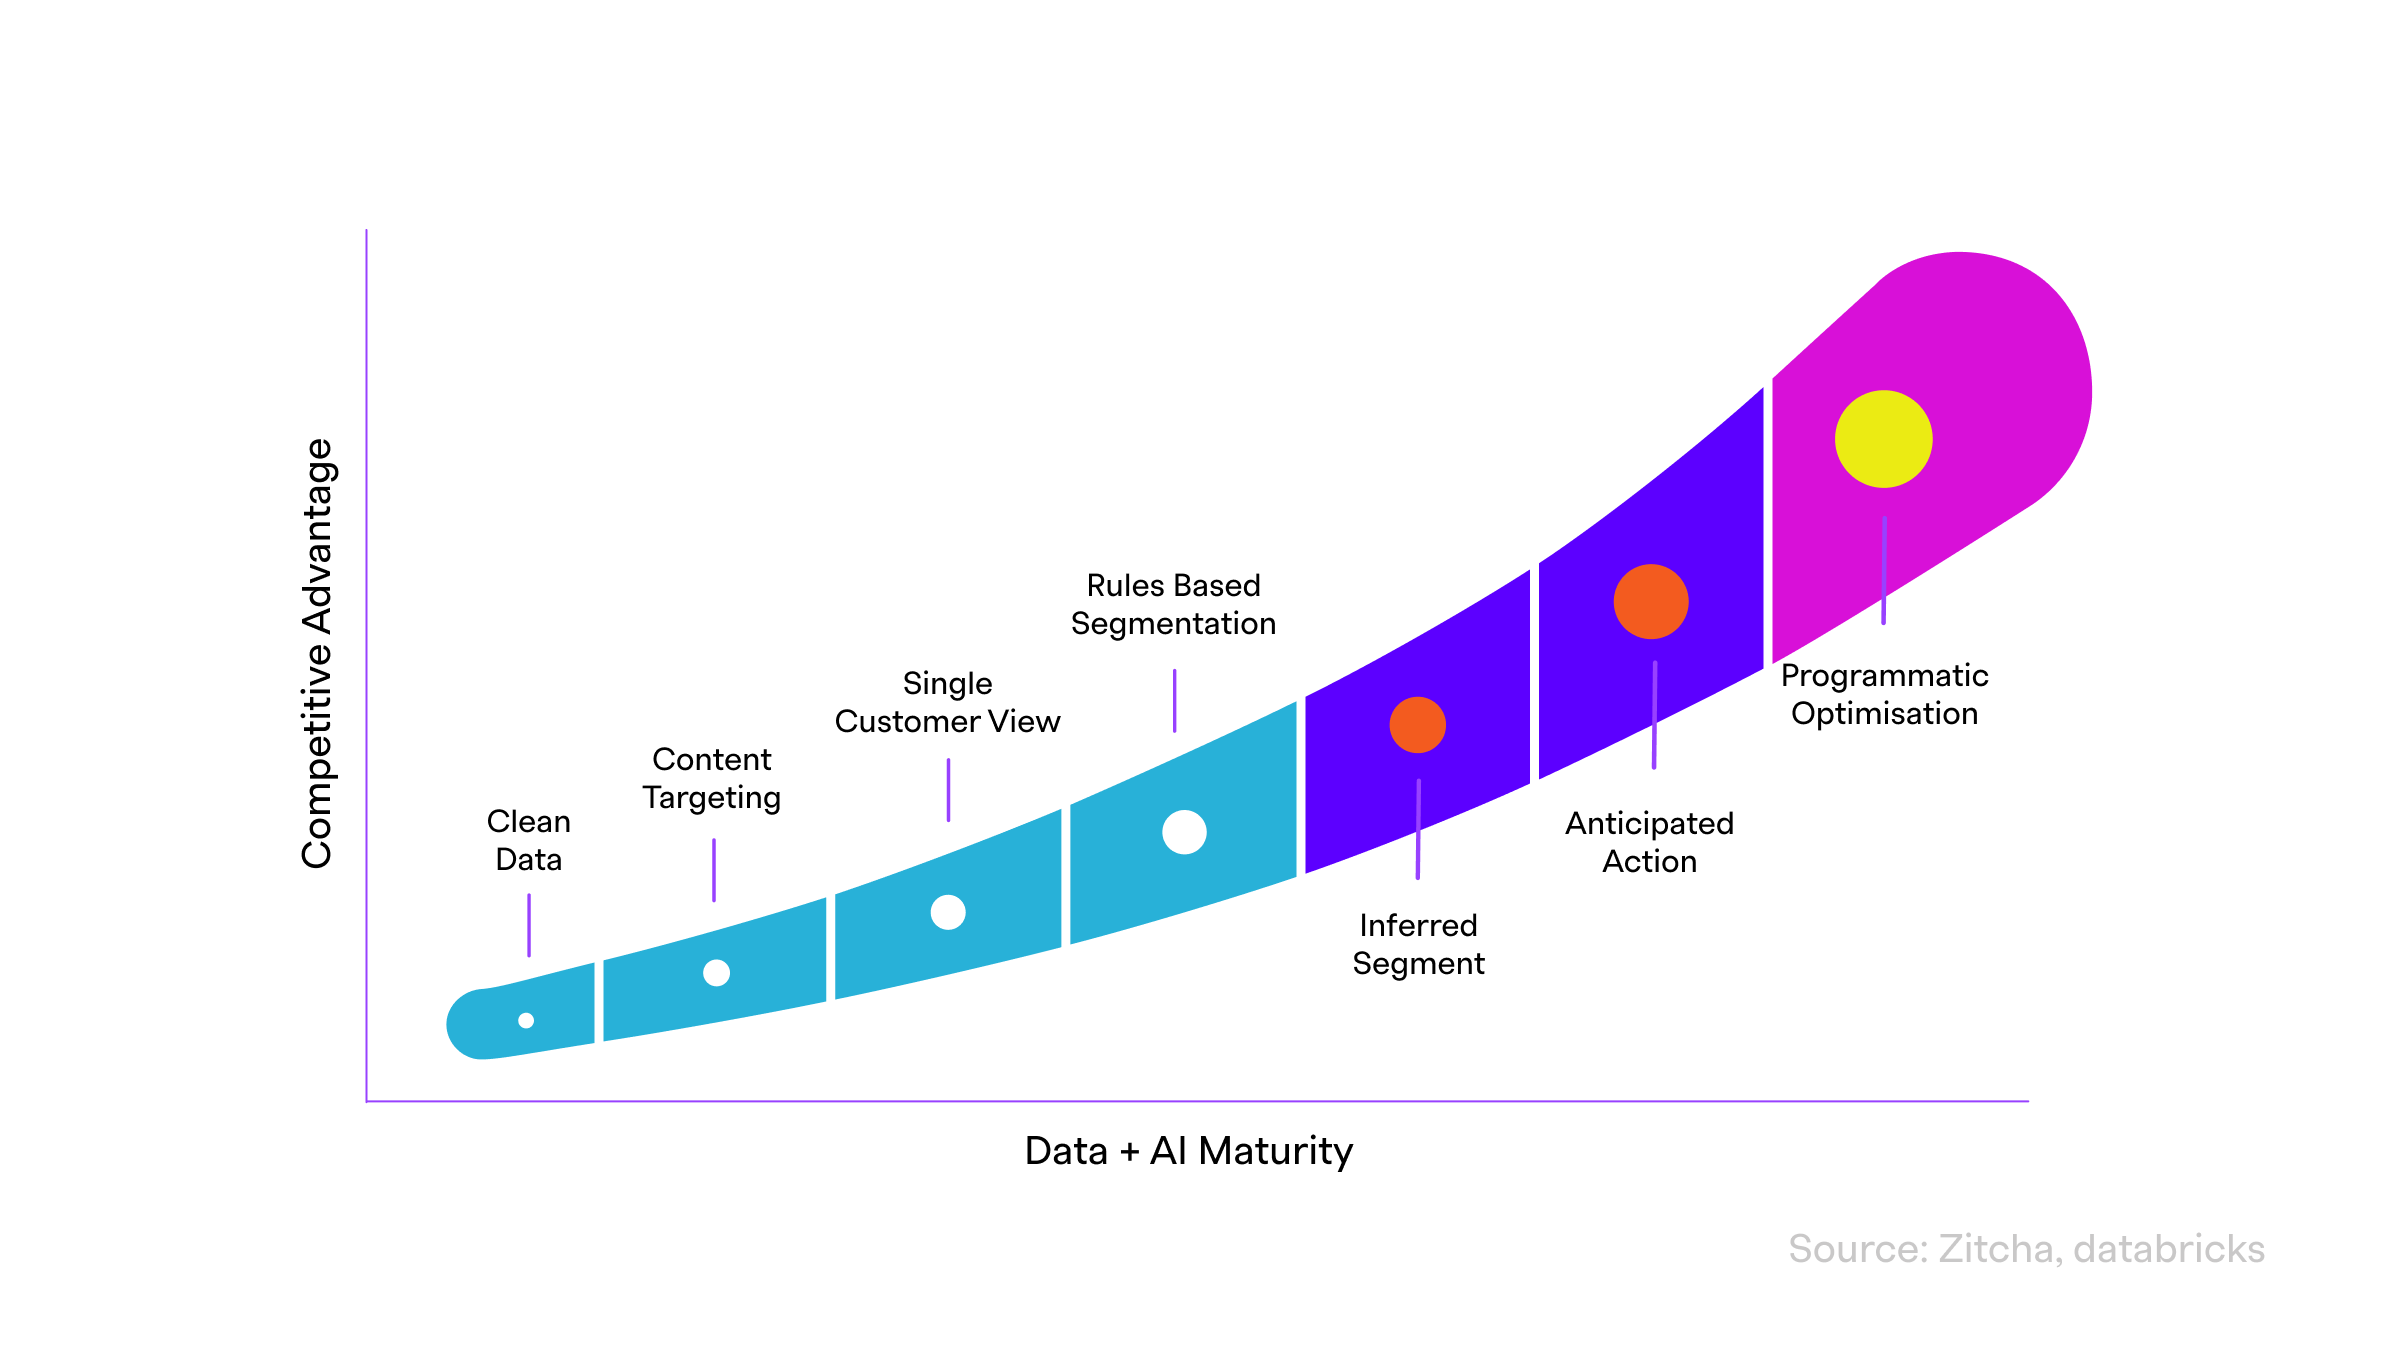 The data + AI maturity curve